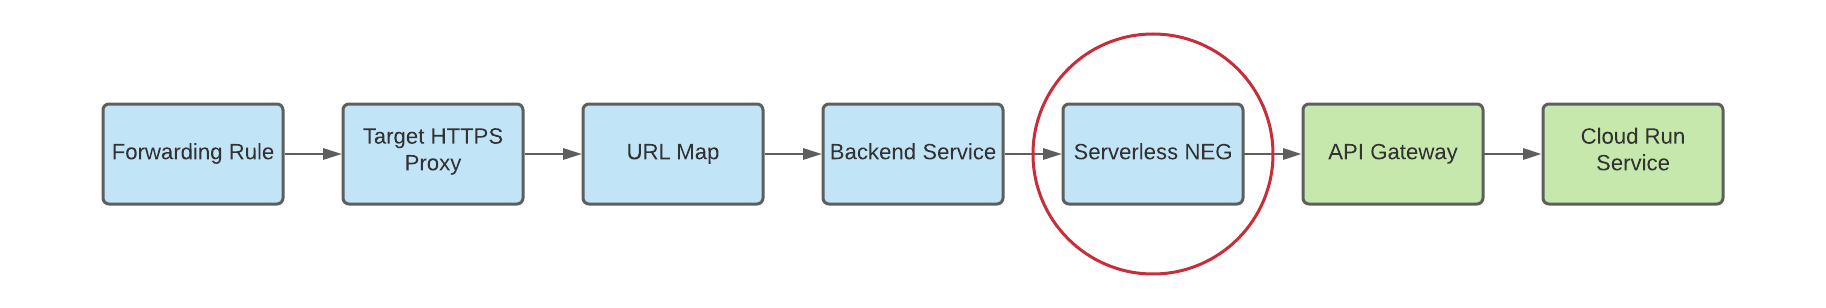 diagram of serverless neg as backend for multi-region gateways